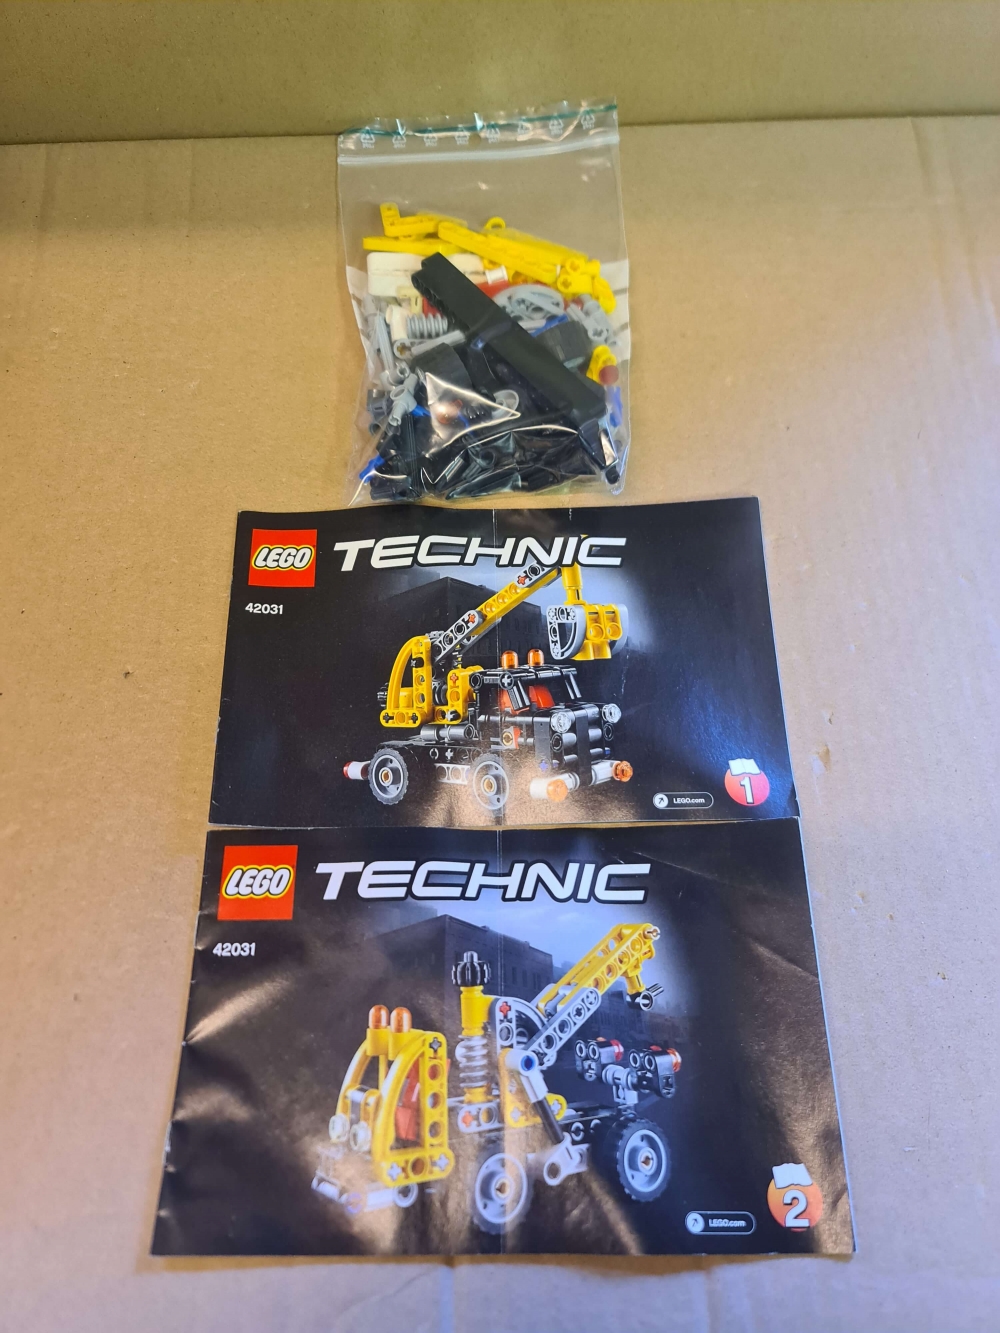 Sett 42031 fra Lego Technic serien.
Som nytt. 
Komplett med manualer.